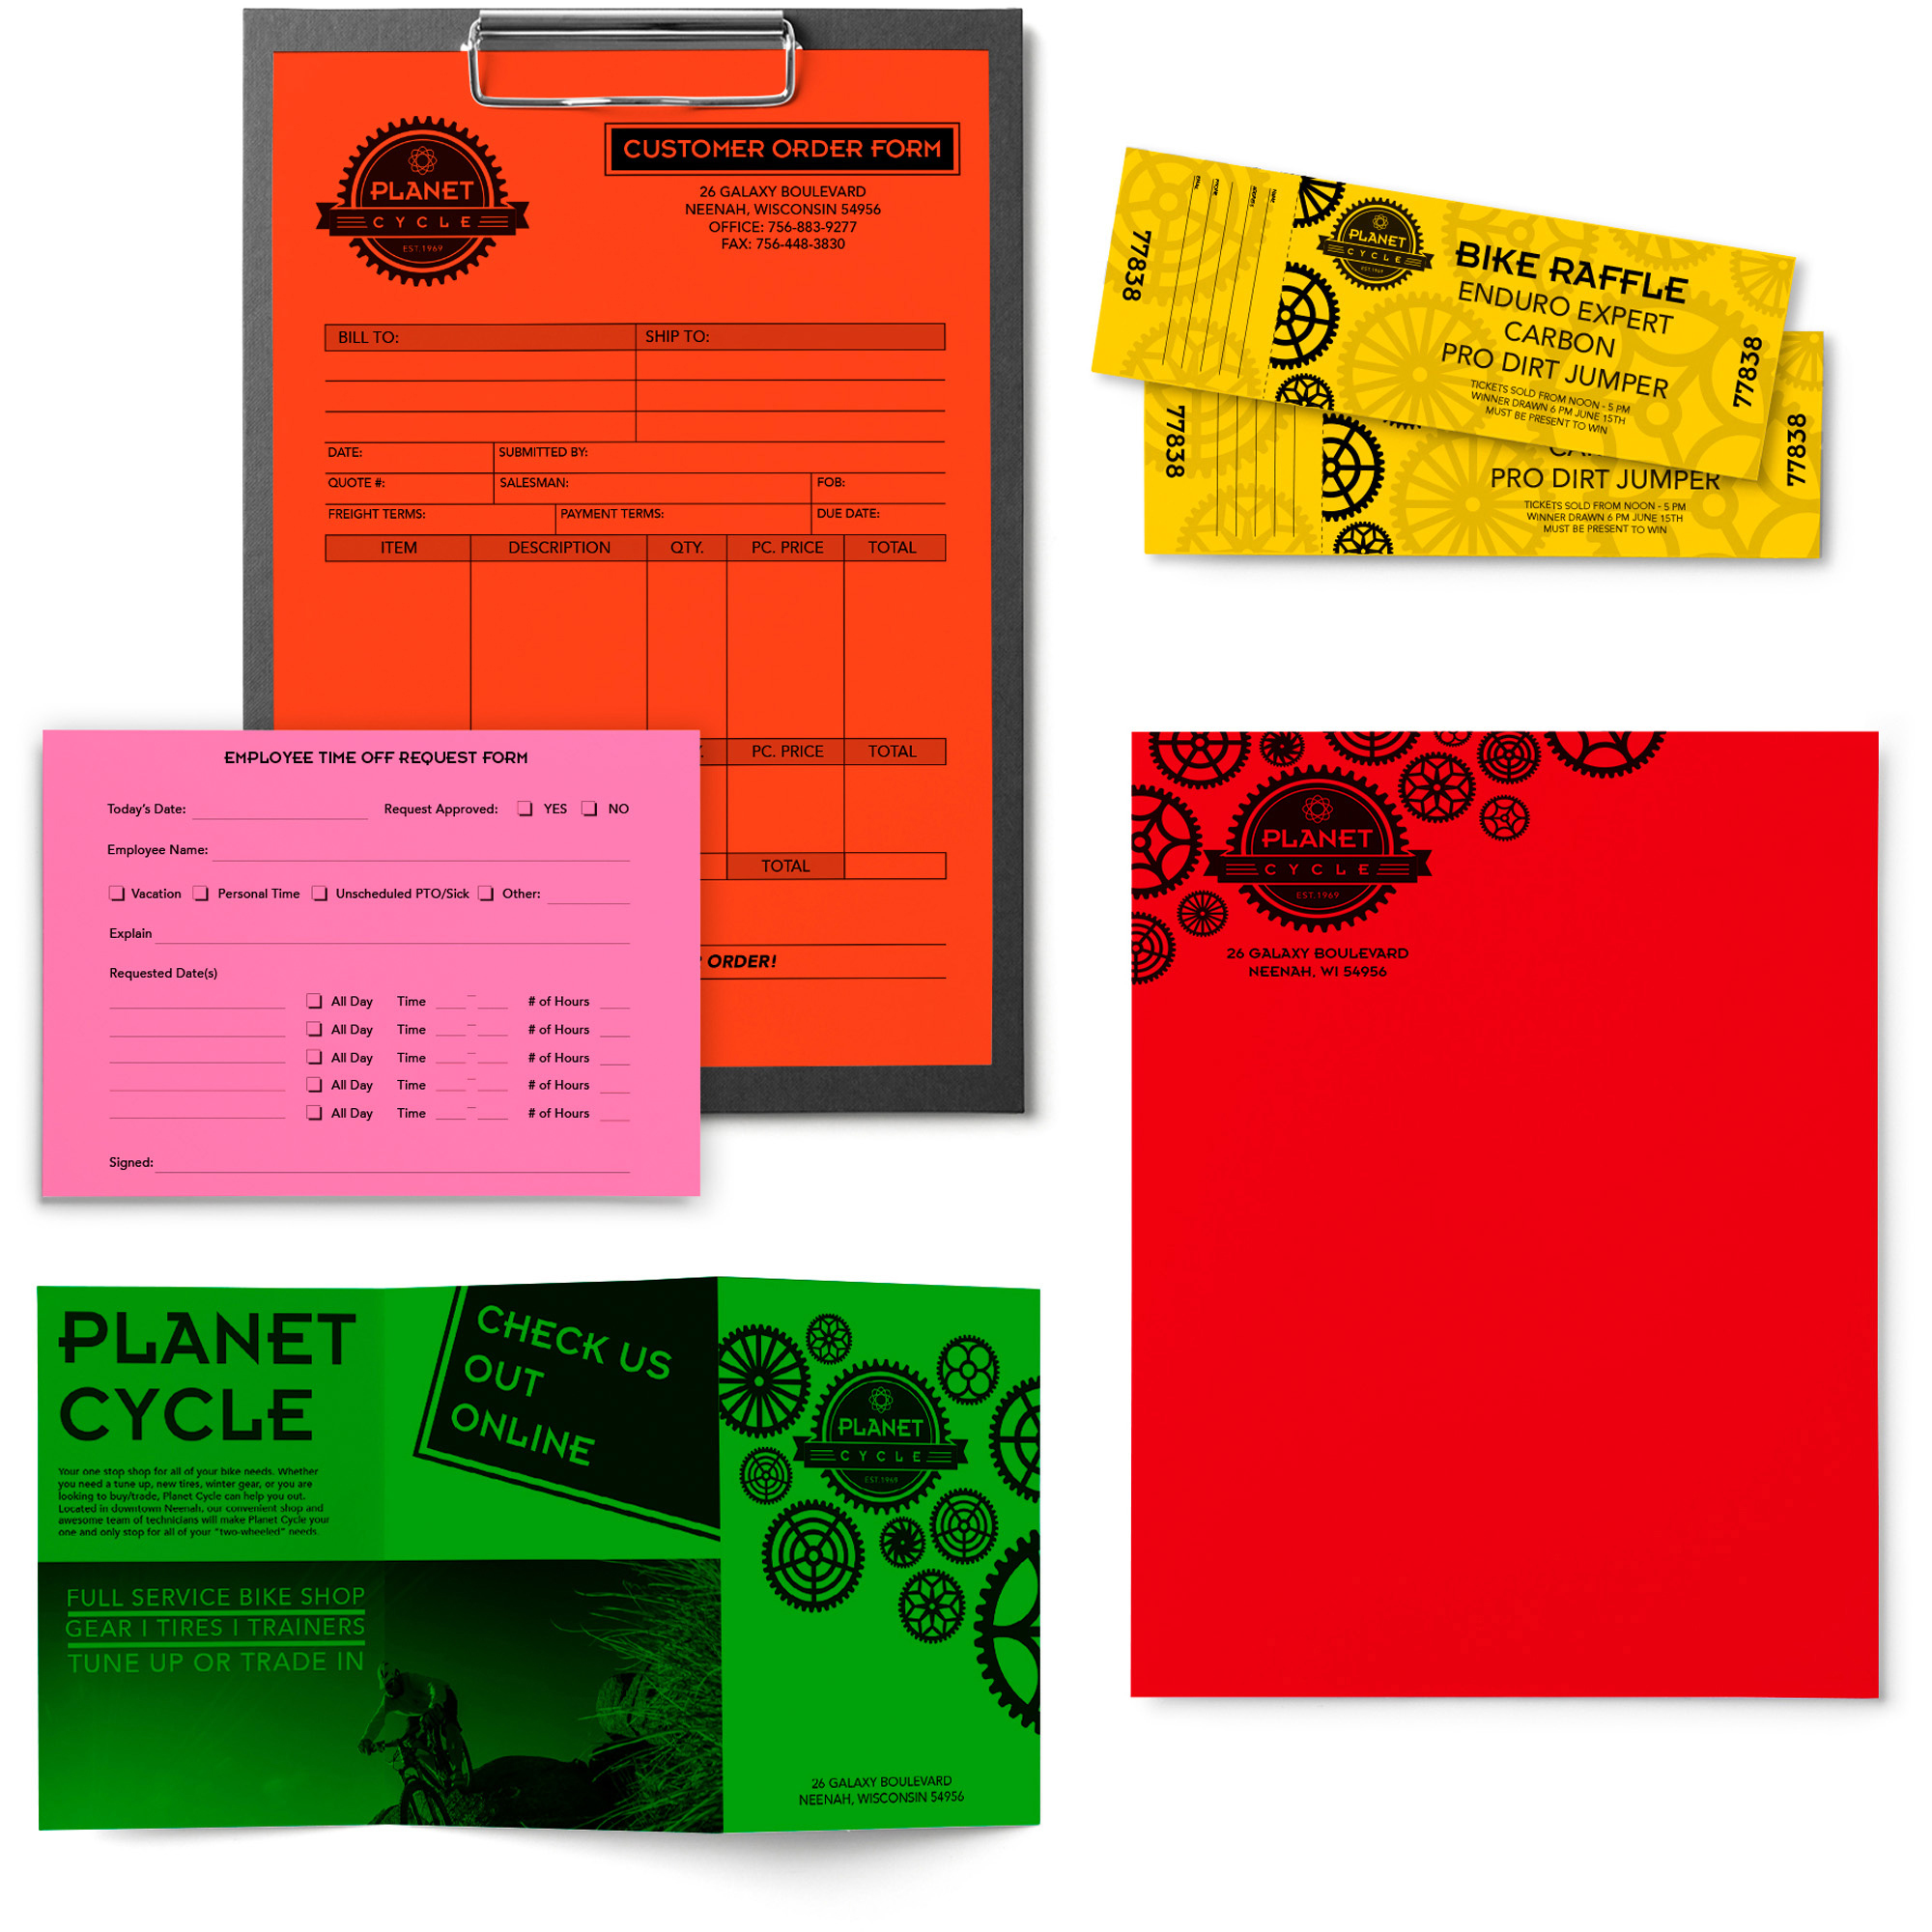 Astrobrights Colored Copy Paper, 24 lb, 8-1/2 x 11, 500 Sheets, 5 Colors